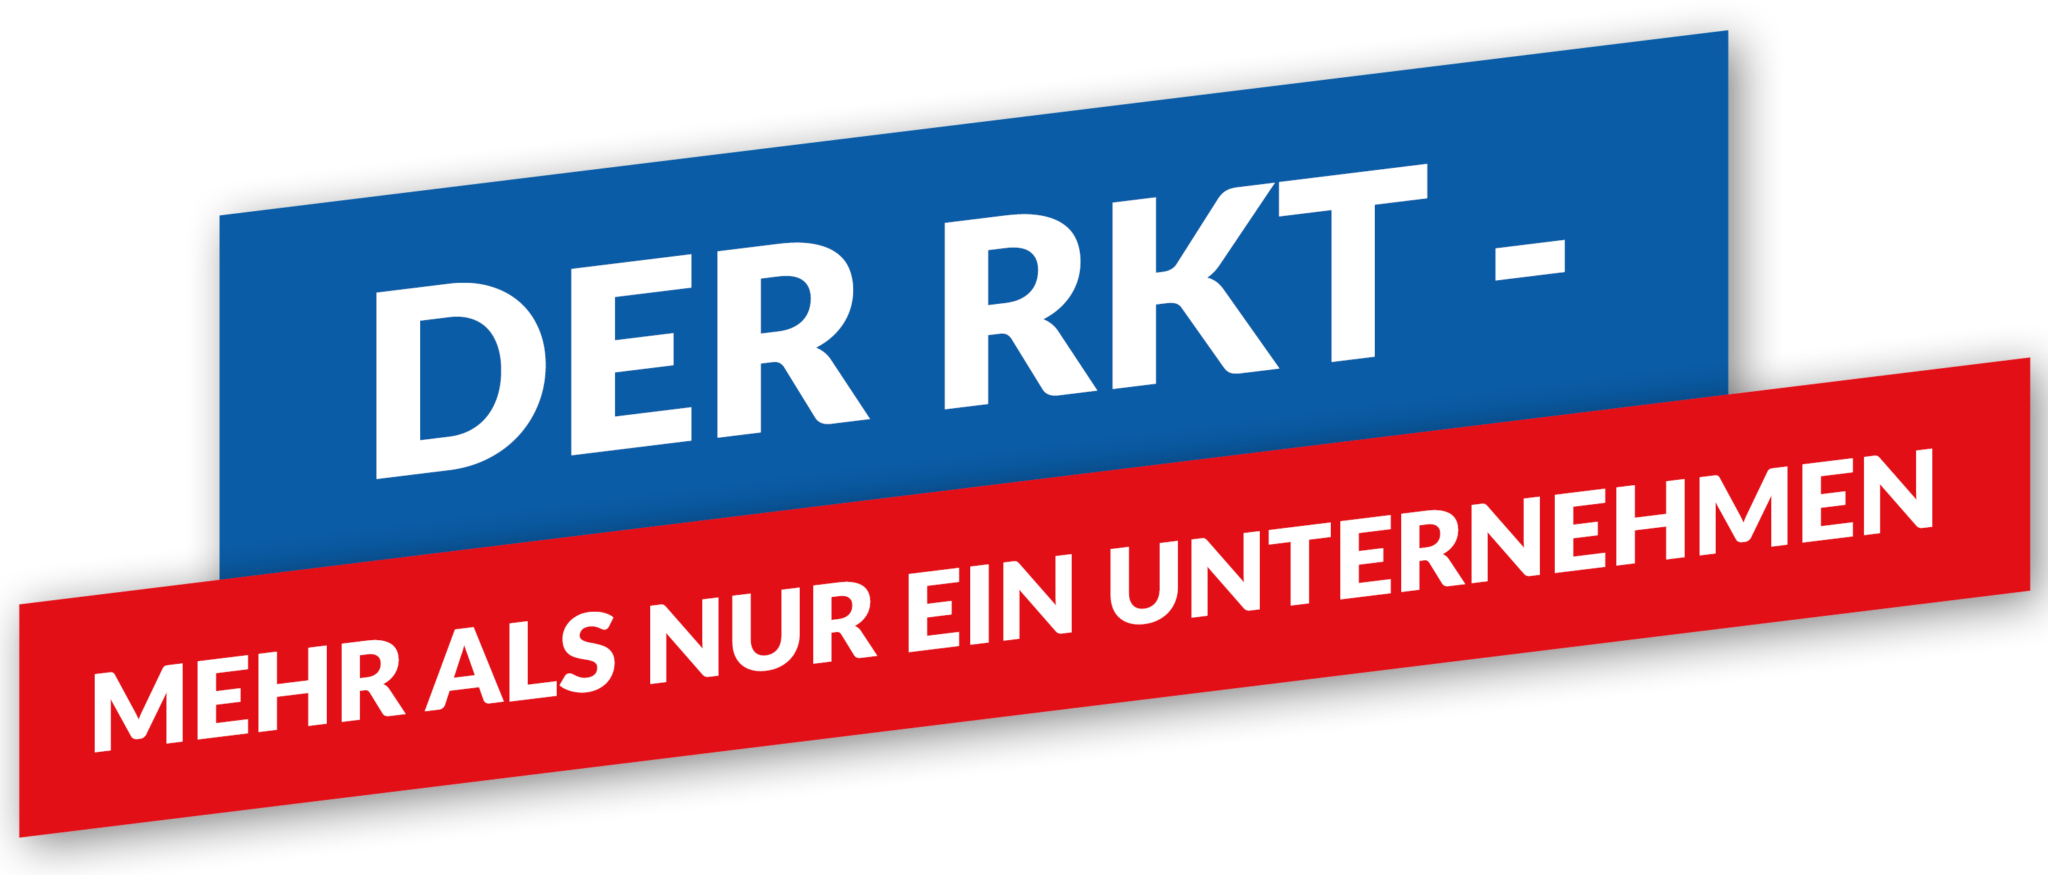 RKT_Unternehmen